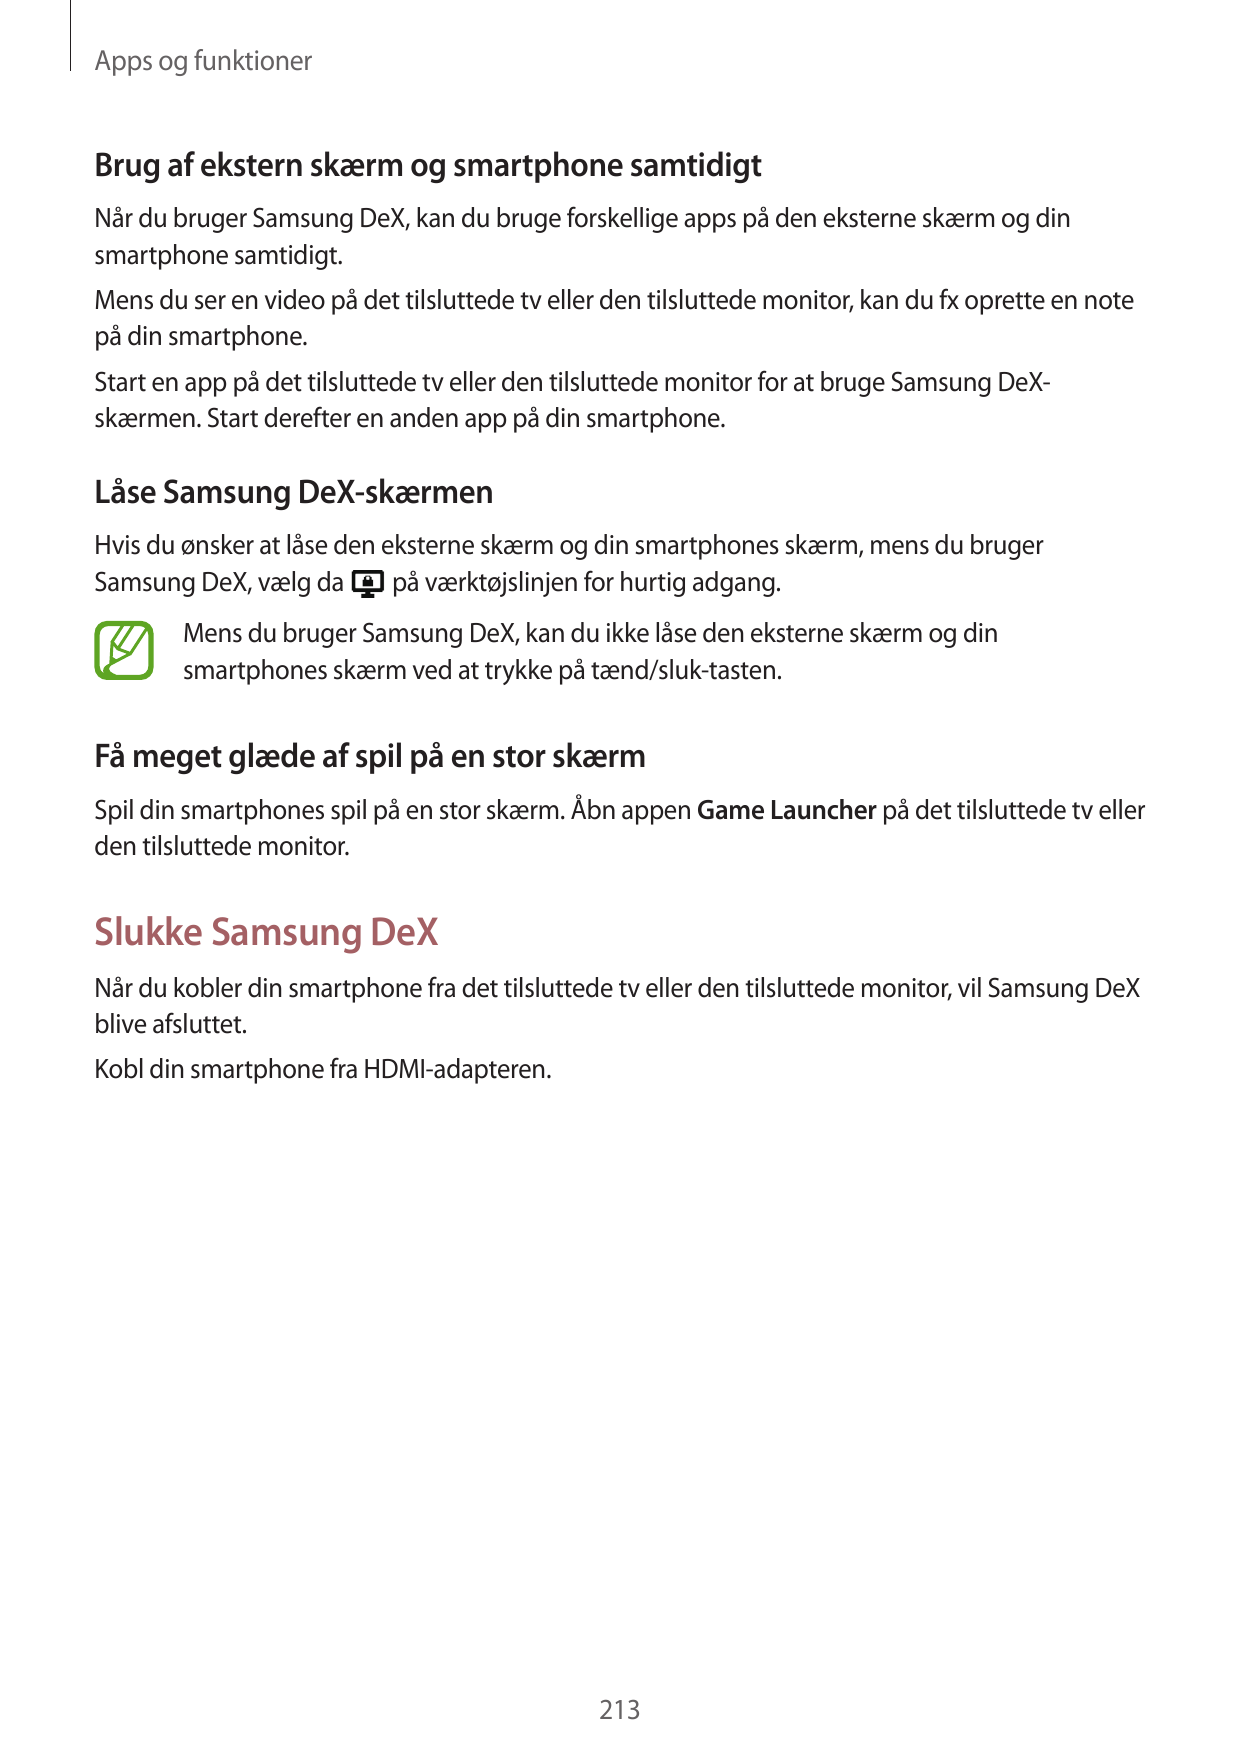 Apps og funktionerBrug af ekstern skærm og smartphone samtidigtNår du bruger Samsung DeX, kan du bruge forskellige apps på den e